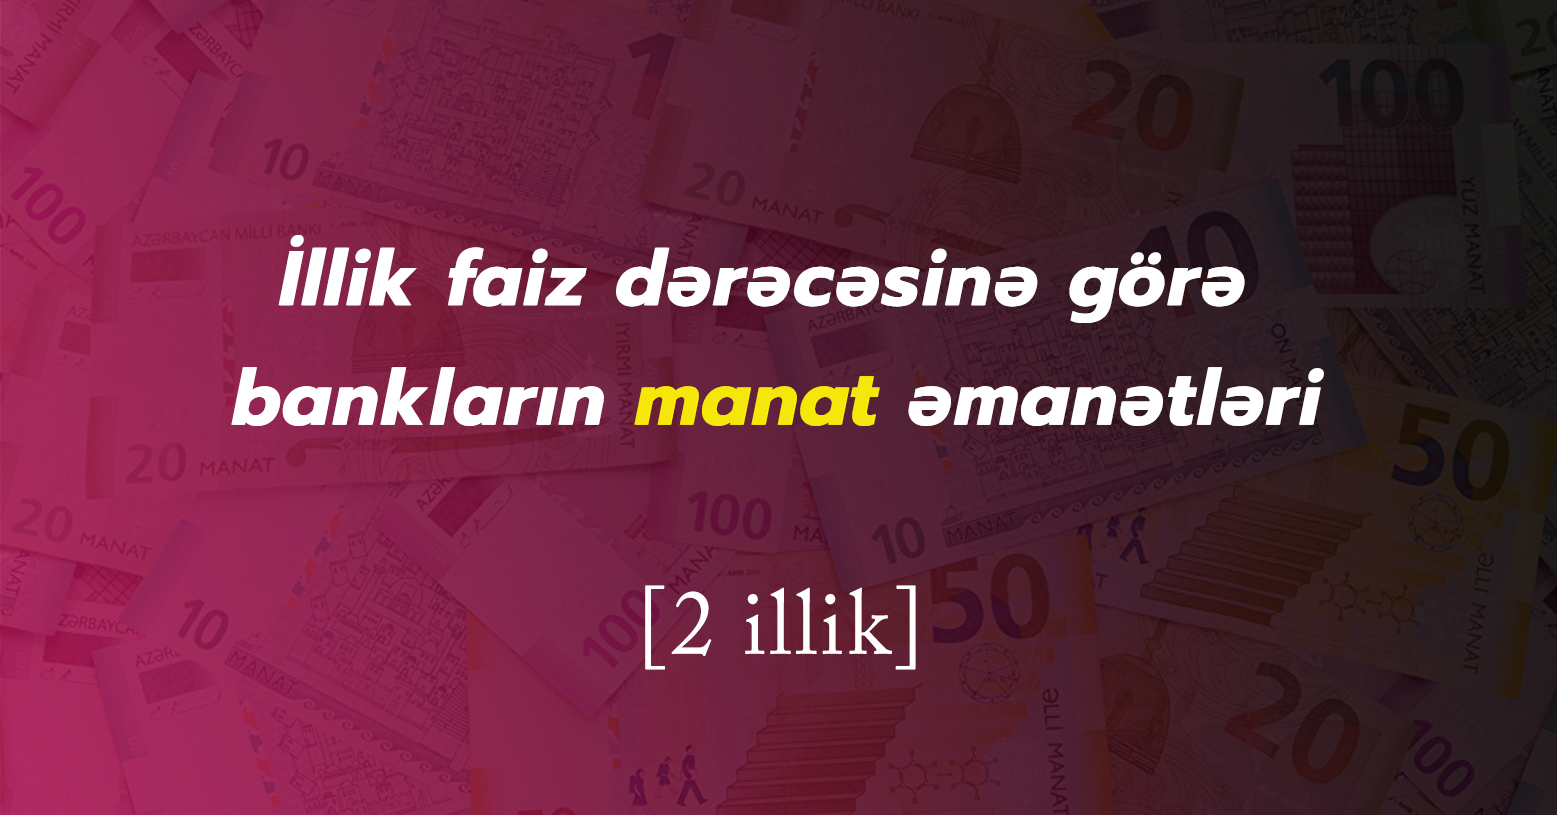 Manat əmanəti hansı banklarda daha sərfəlidir? (2 illik) - Yanvar 2022